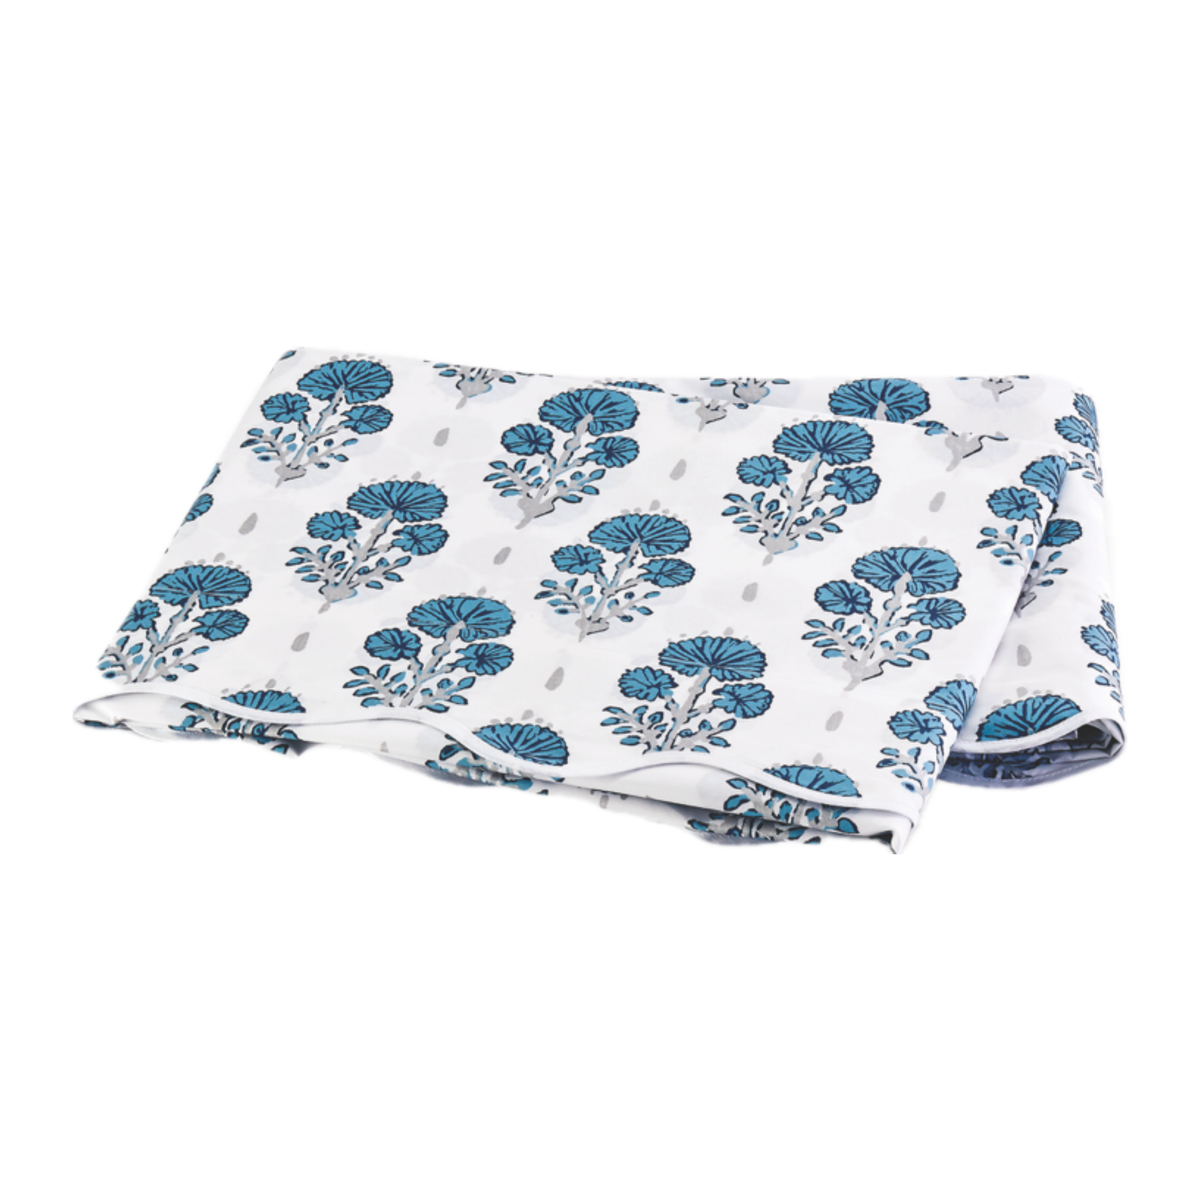 Folded Flat Sheet of Lulu DK Matouk Joplin Bedding in Mineral Blue Color